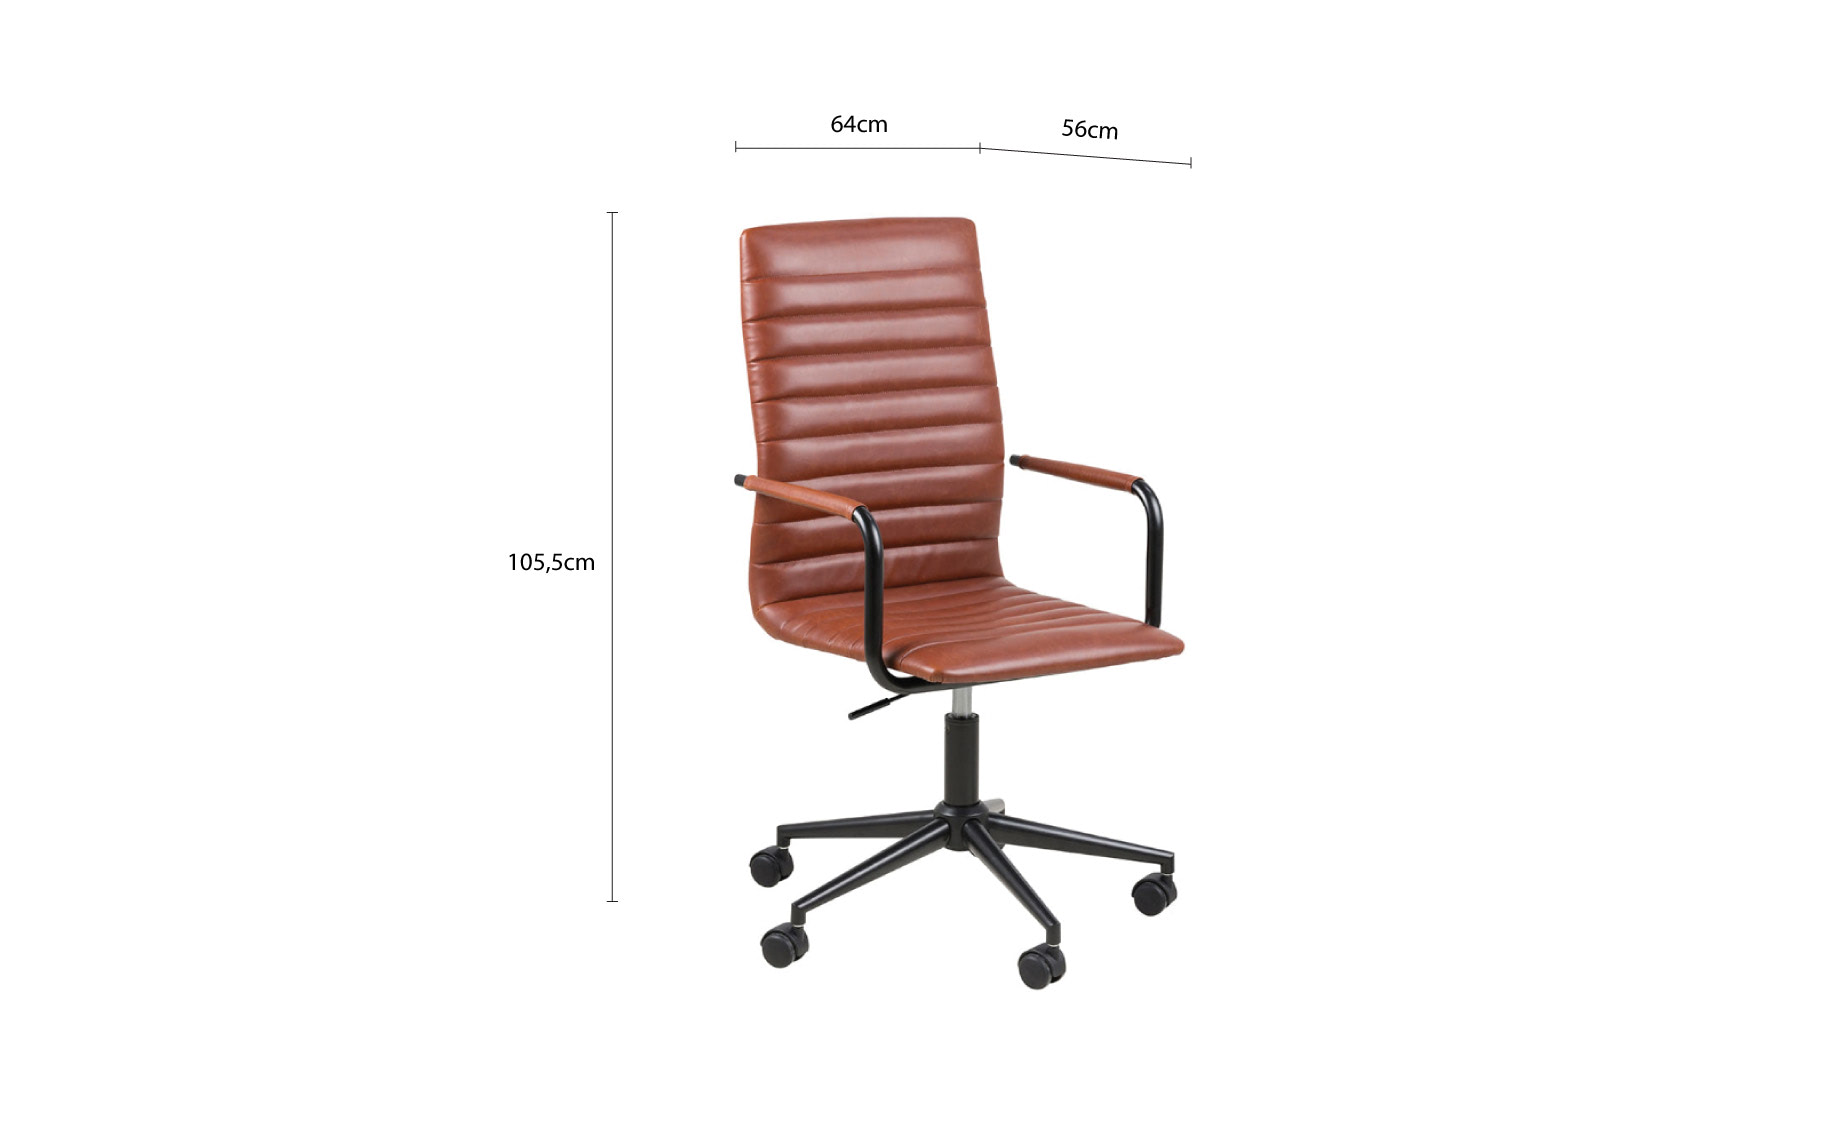 Winslow kancelarijska stolica 64x56x105,5cm braon